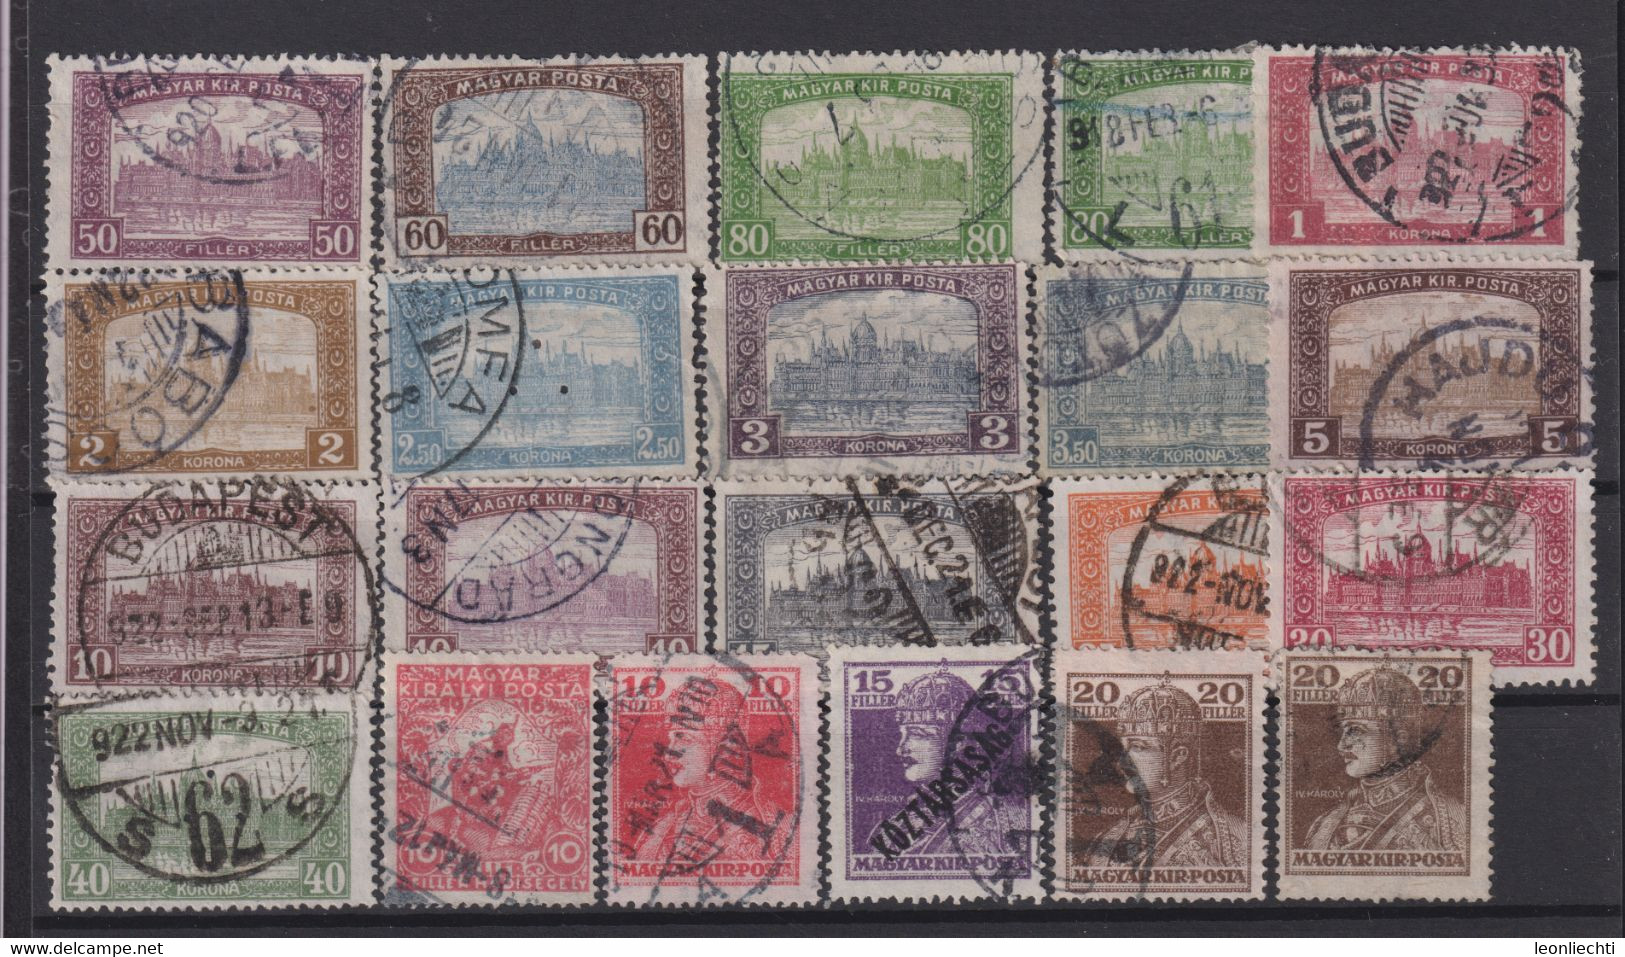 Ungarn Lot ° Briefmarken Gestempelt /  Stamps Stamped /  Timbres Oblitérés - Sammlungen